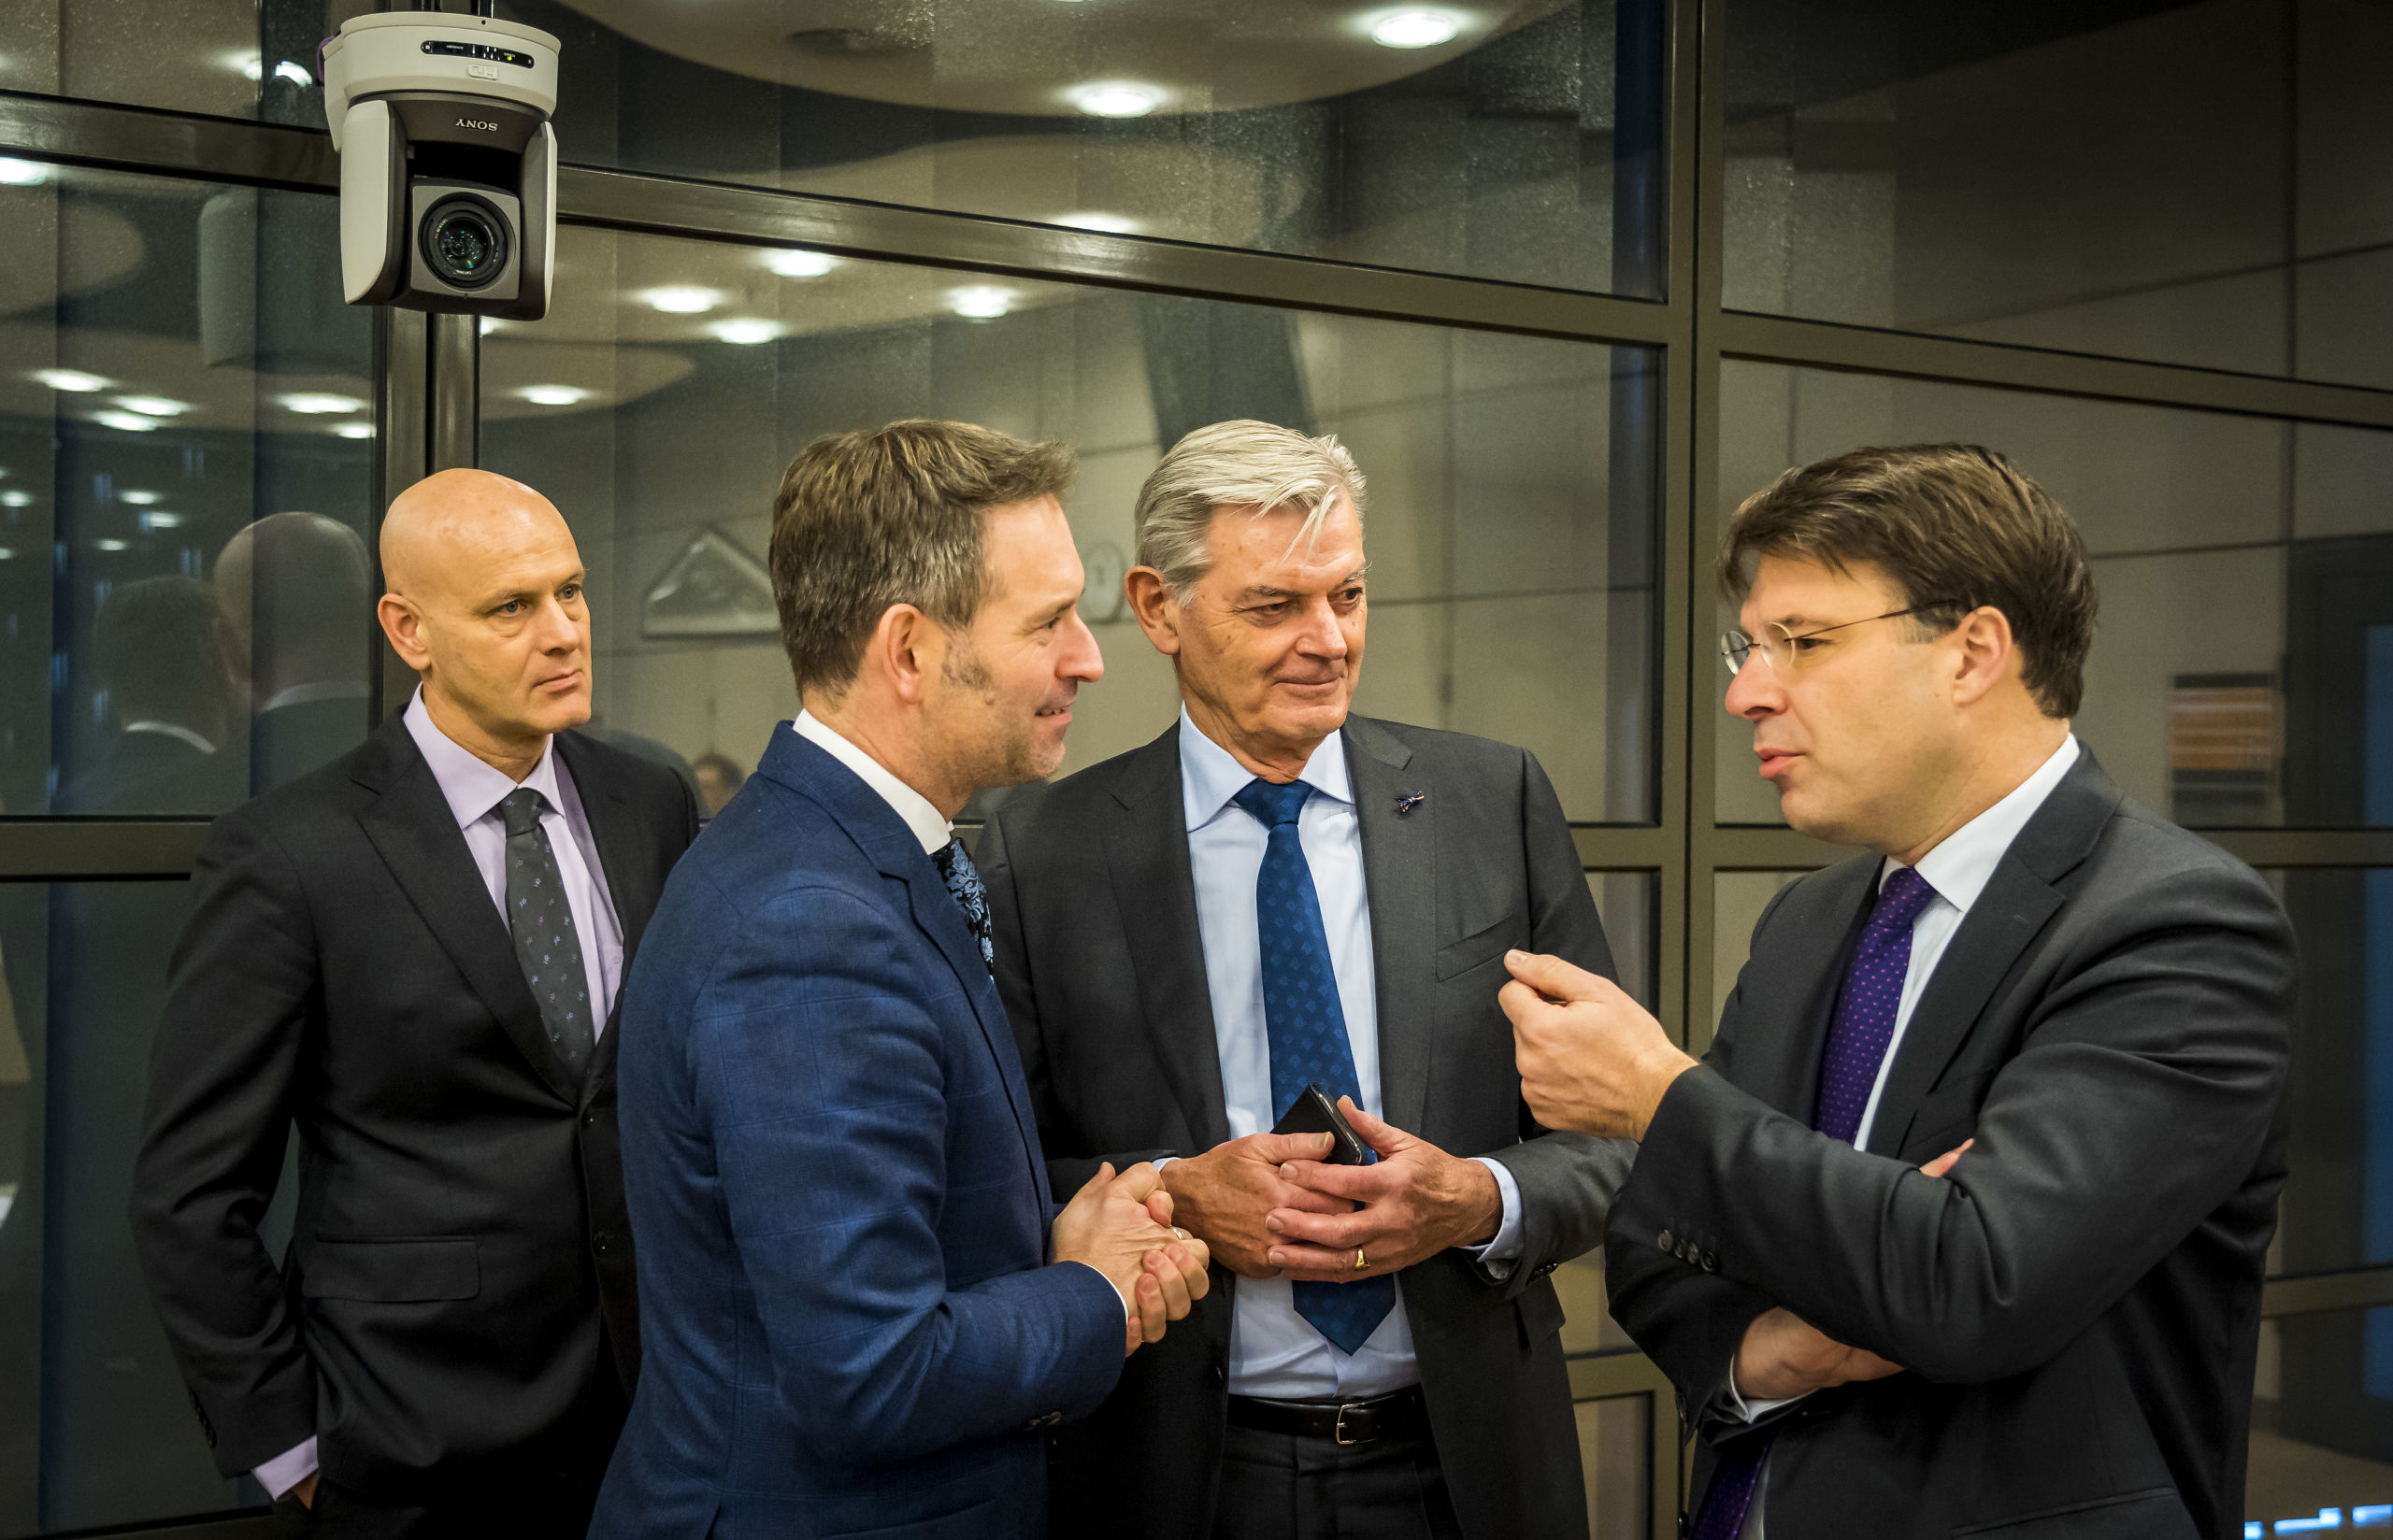 VVD-Kamerlid Roald van der Linde (uiterst rechts) op een overleg voorafgaand aan  het algemeen overleg over pensioenonderwerpen in aanwezigheid van minister Koolmees. 